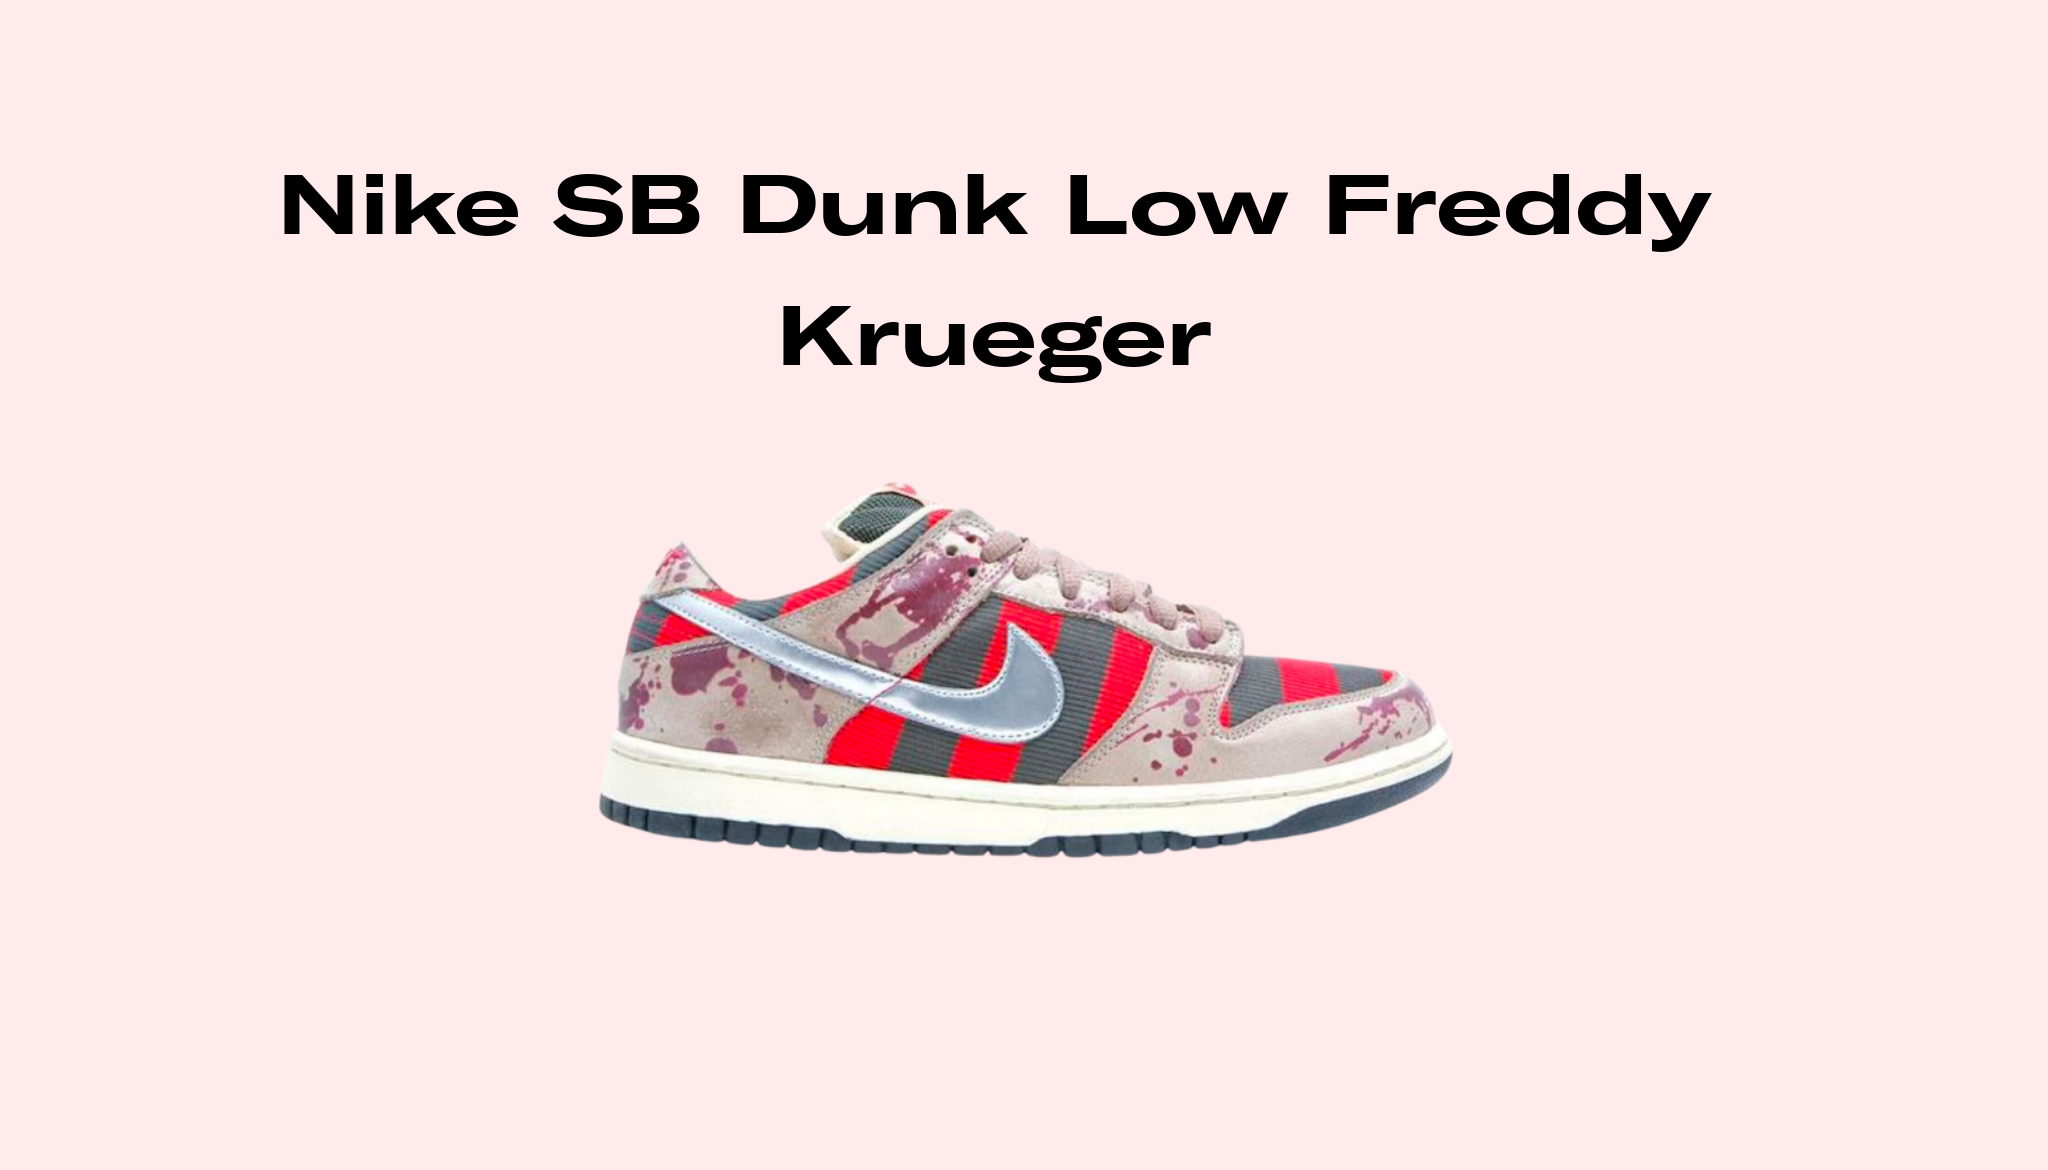 Nike Dunk Low Freddy Krueger, Raffles and Release Date | Sole Retriever